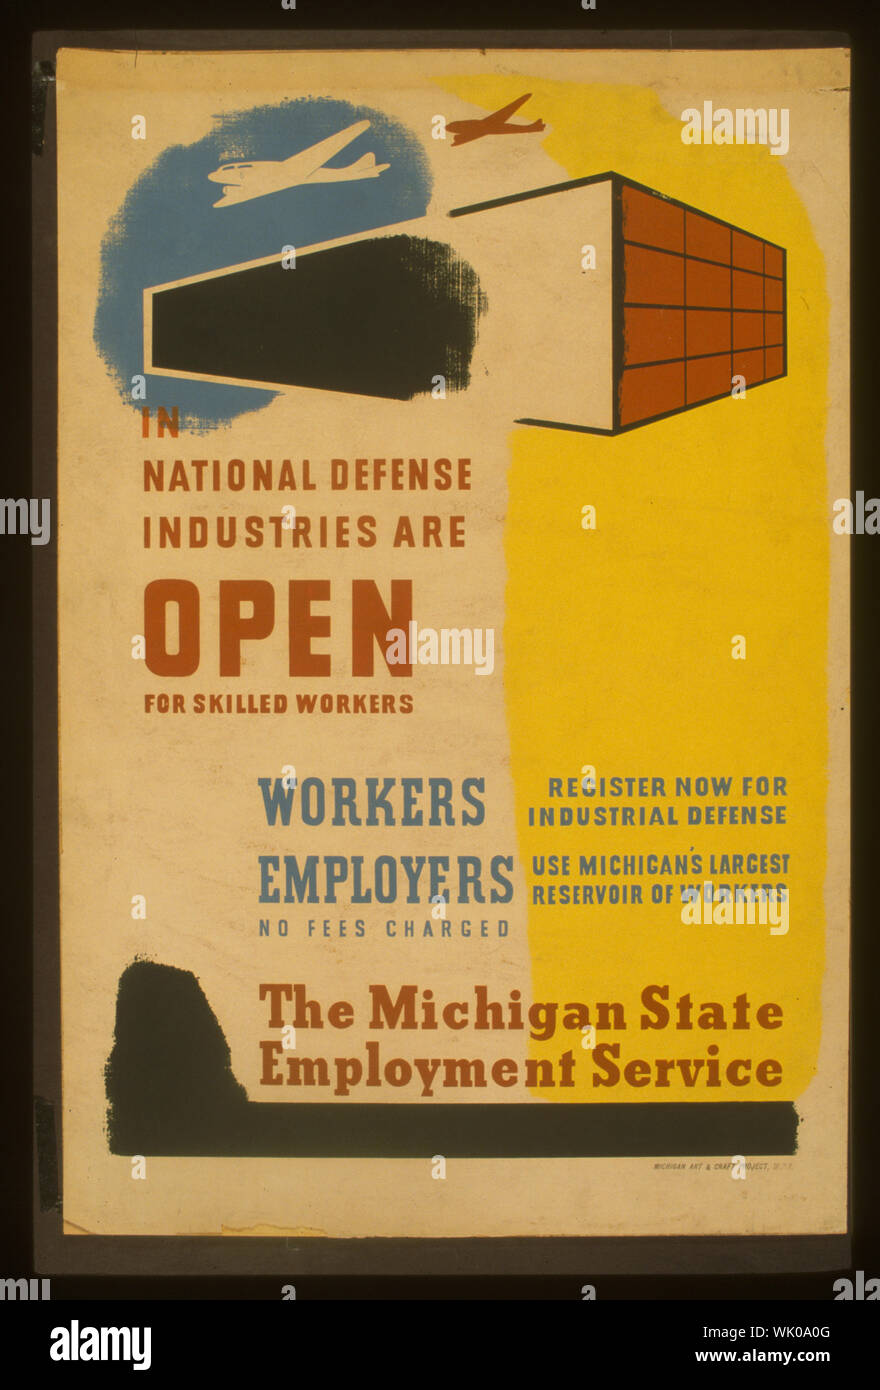 En las industrias de la defensa nacional están abiertas para los trabajadores calificados Resumen: cartel anunciando las oportunidades de empleo para trabajadores industriales calificados en Michigan. Foto de stock